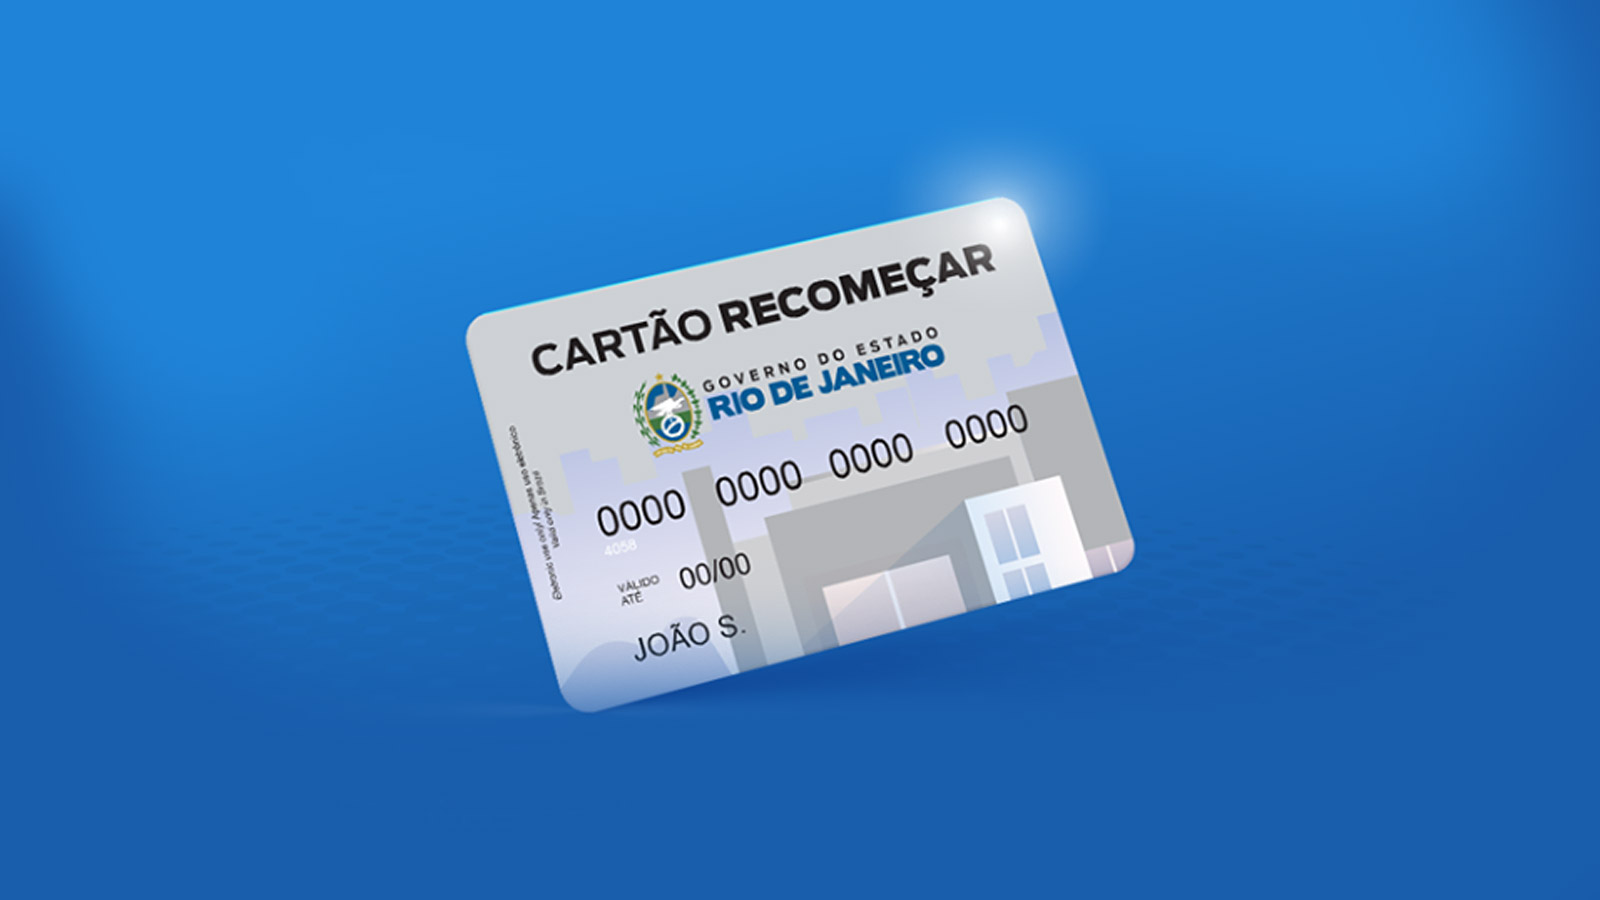 Cartão Recomeçar será liberado para moradores de São João de Meriti, Mesquita, Duque de Caxias, Nova Iguaçu e Nilópolis